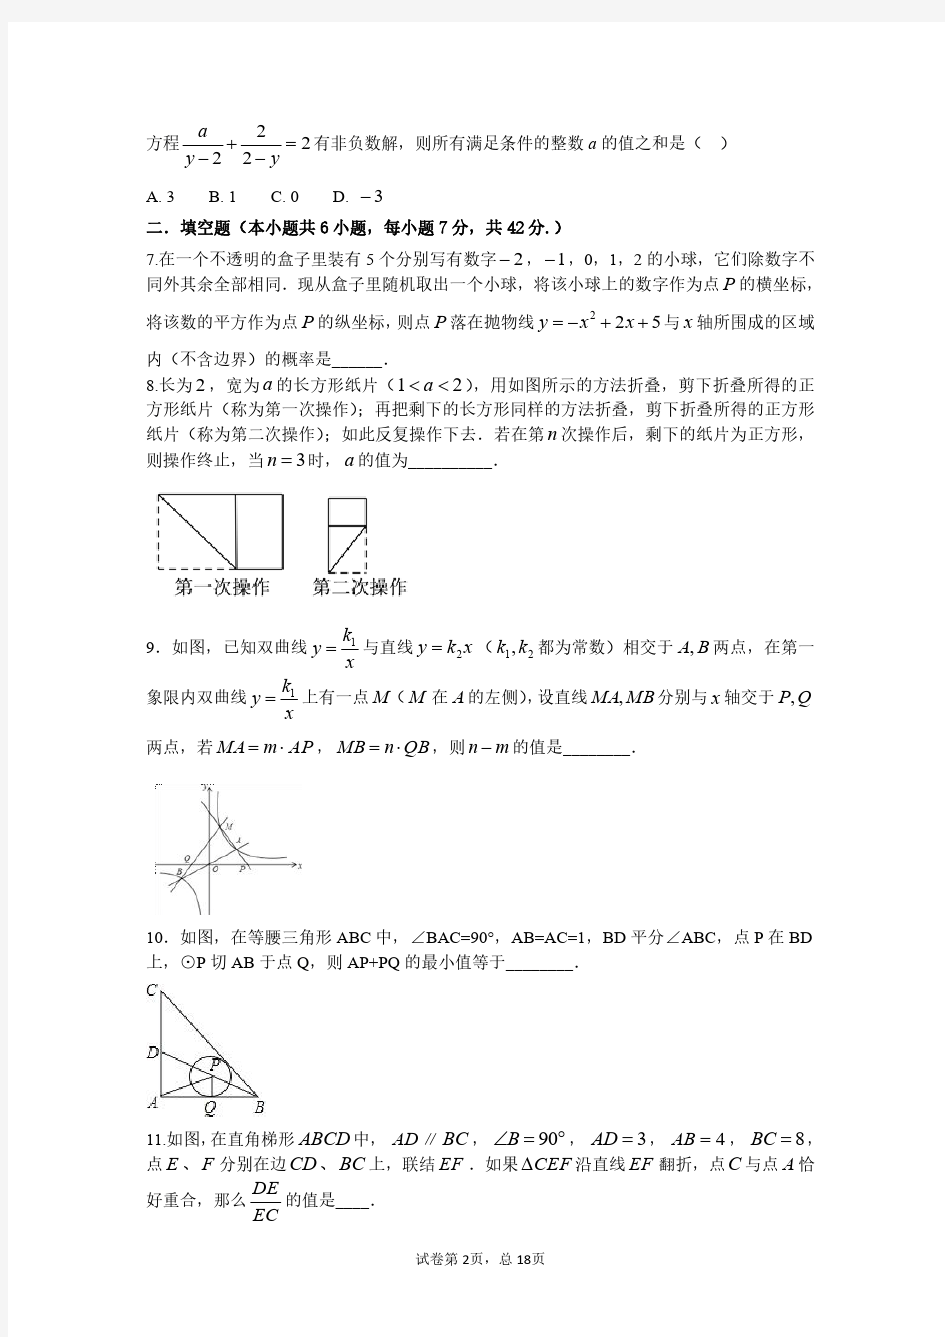 2019年华师一附中专县生数学考试模拟试题(一)含答案